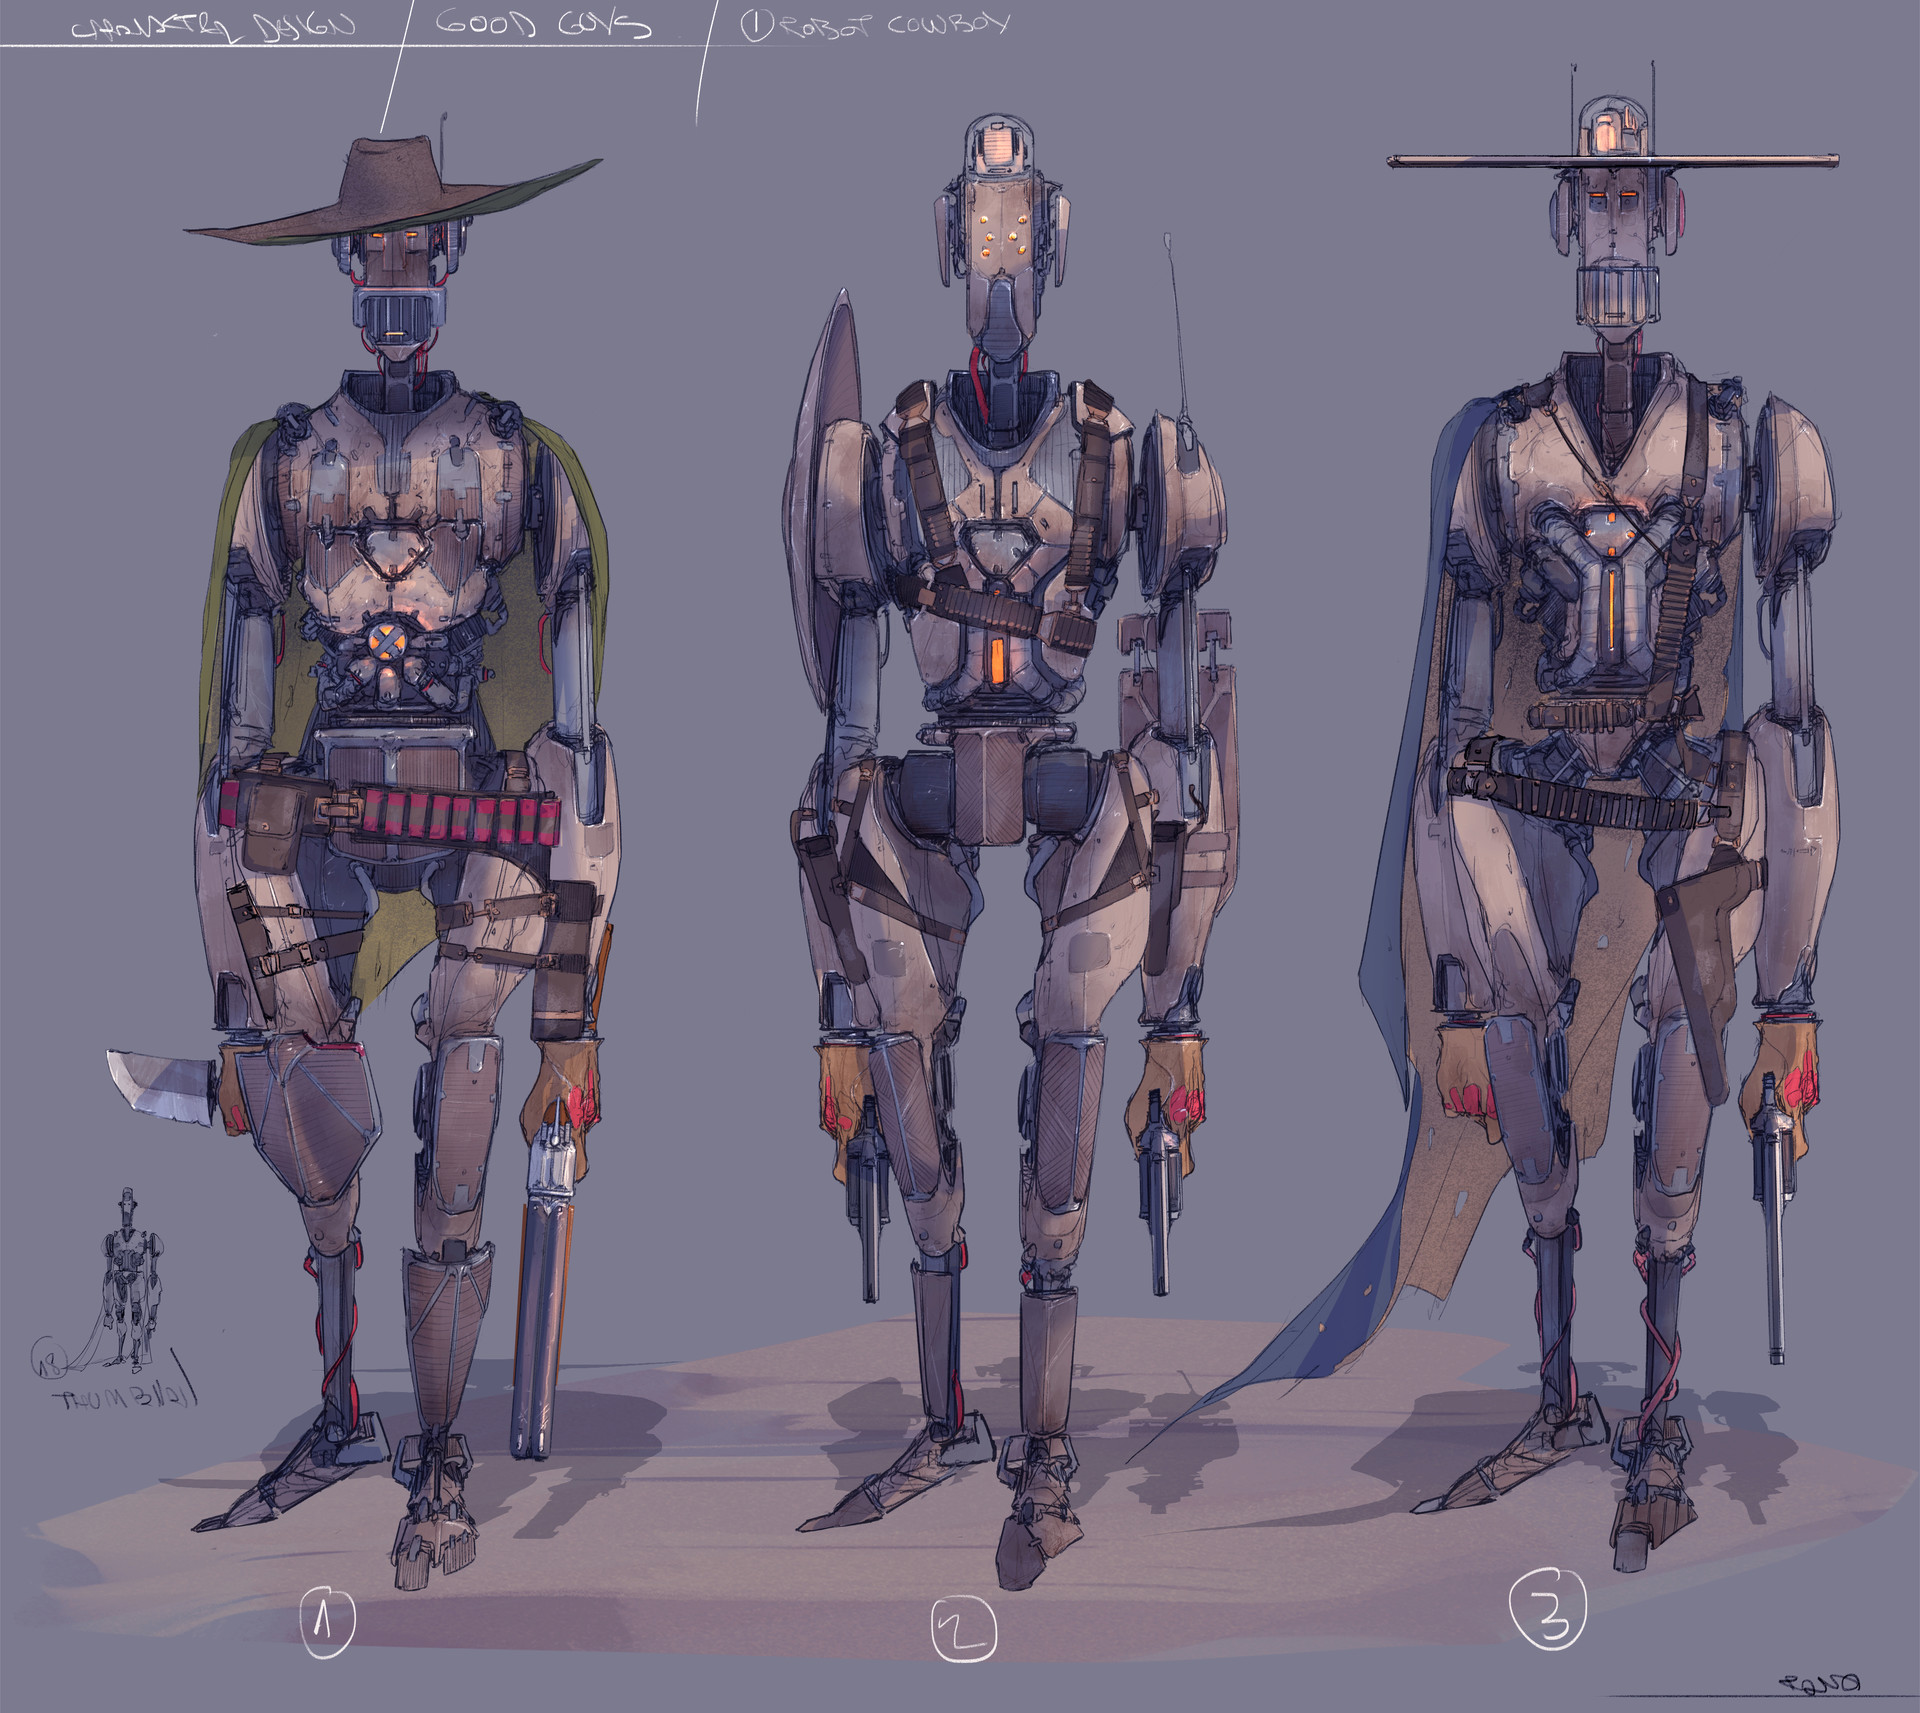 tano-bonfanti-6-robot-cowboy-final-copia.jpg